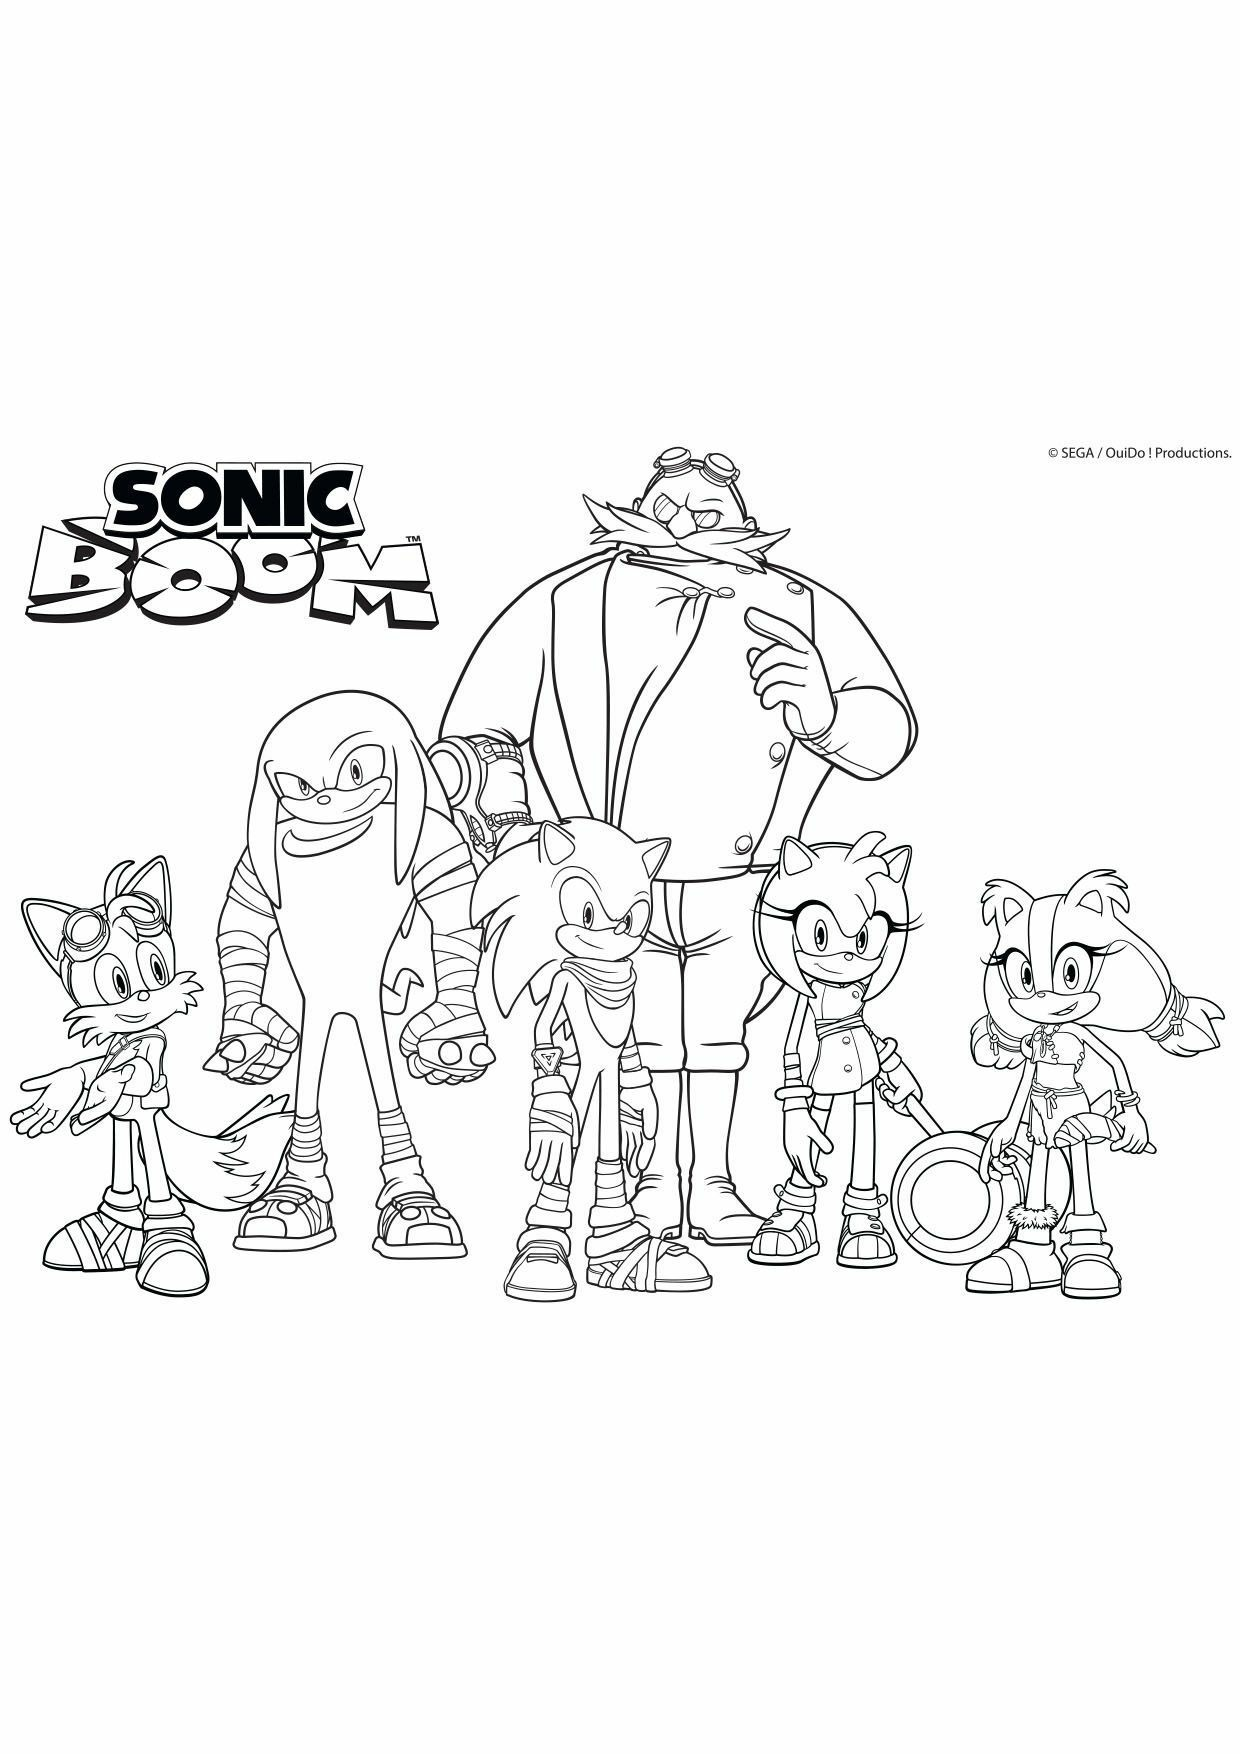   Les personnages de Sonic Boom se tiennent 